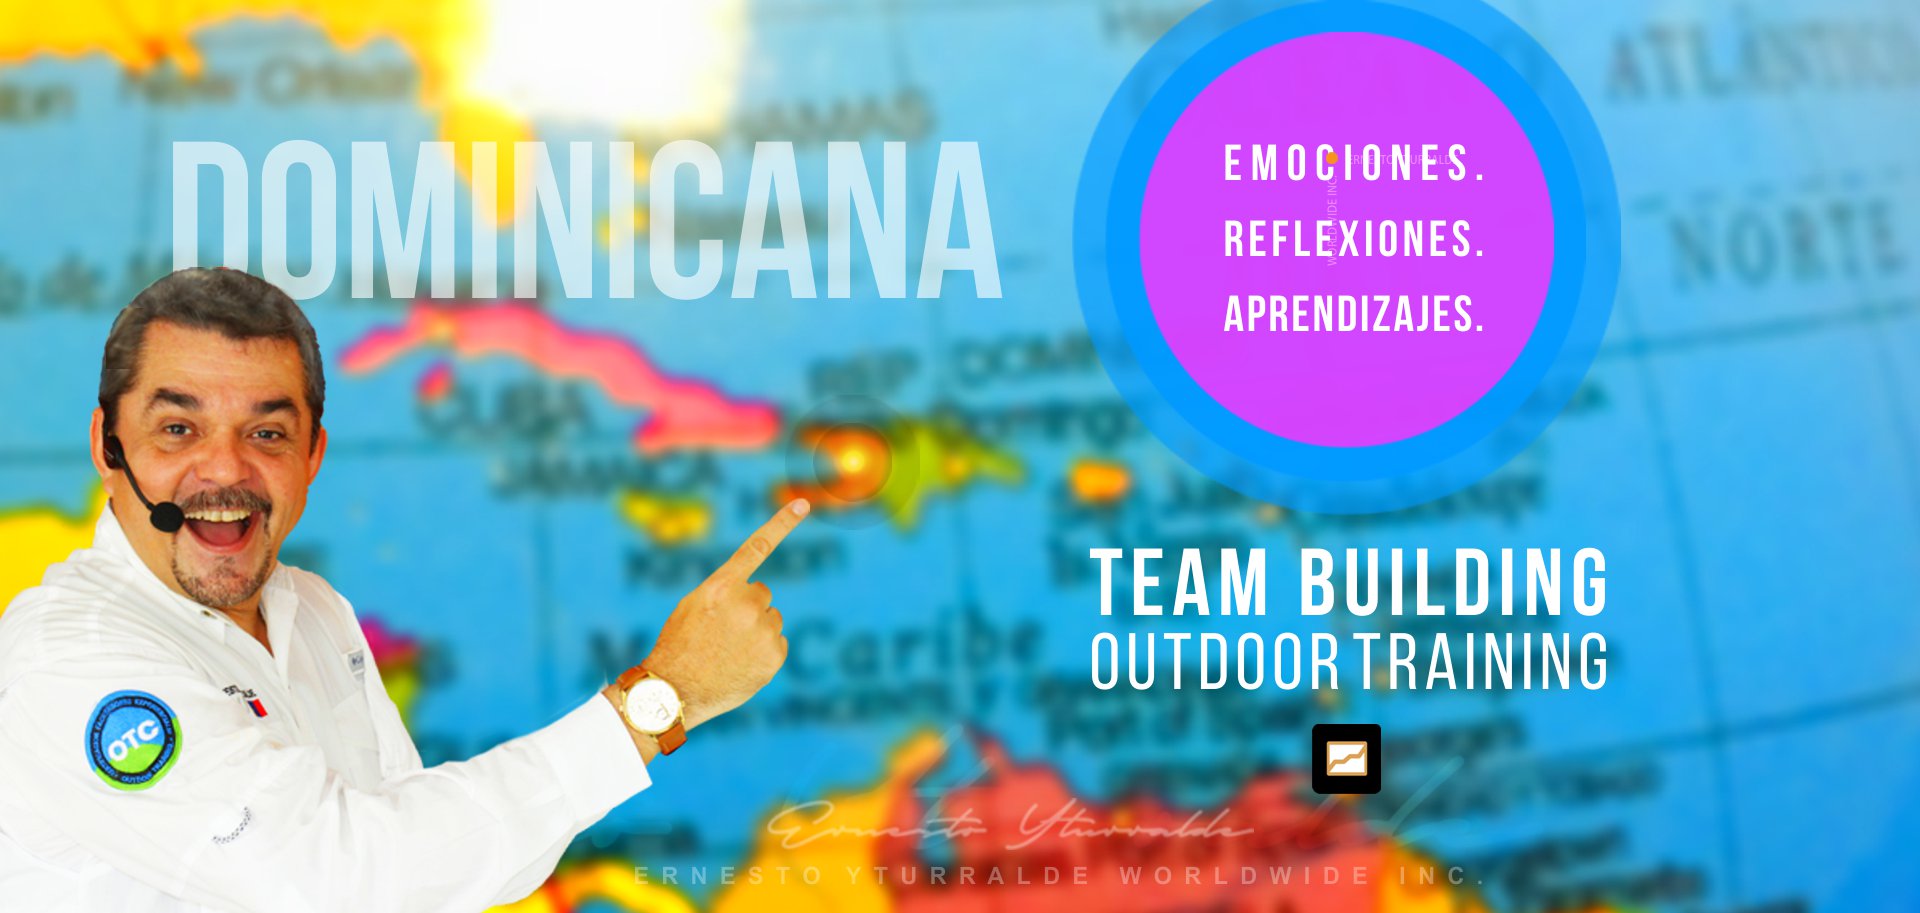 Proveedores de Capacitación - Team Building República Dominicana: Ernesto Yturralde Worldwide Inc.